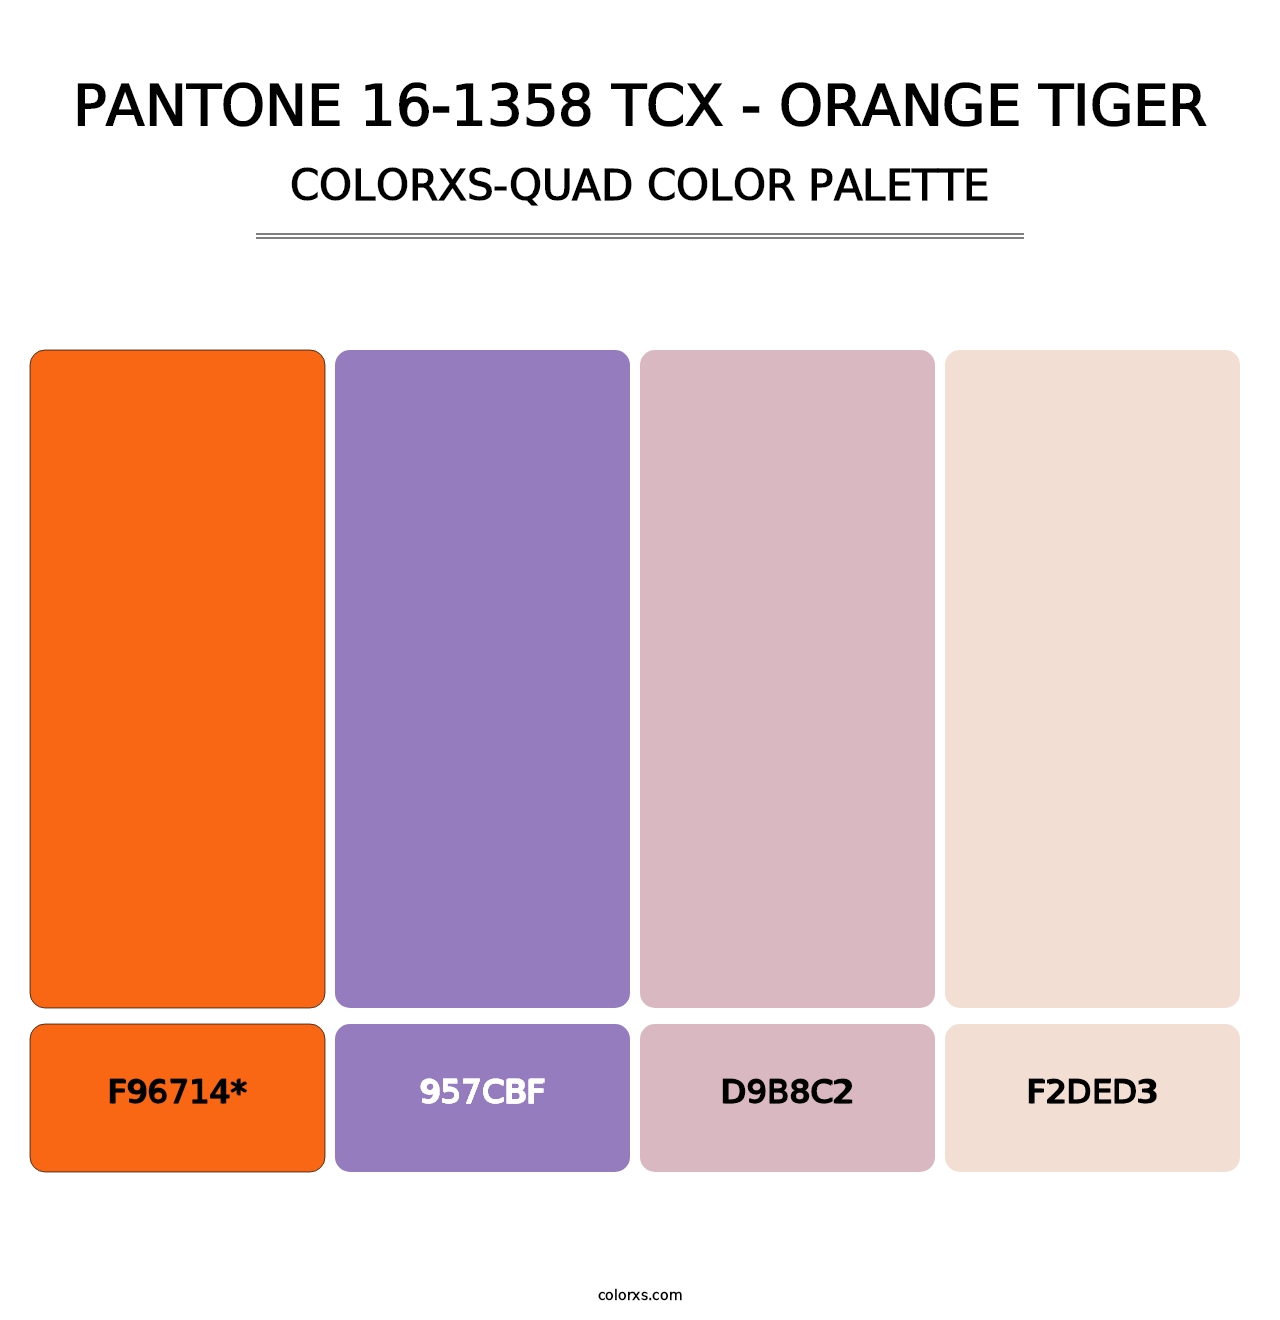 PANTONE 16-1358 TCX - Orange Tiger - Colorxs Quad Palette